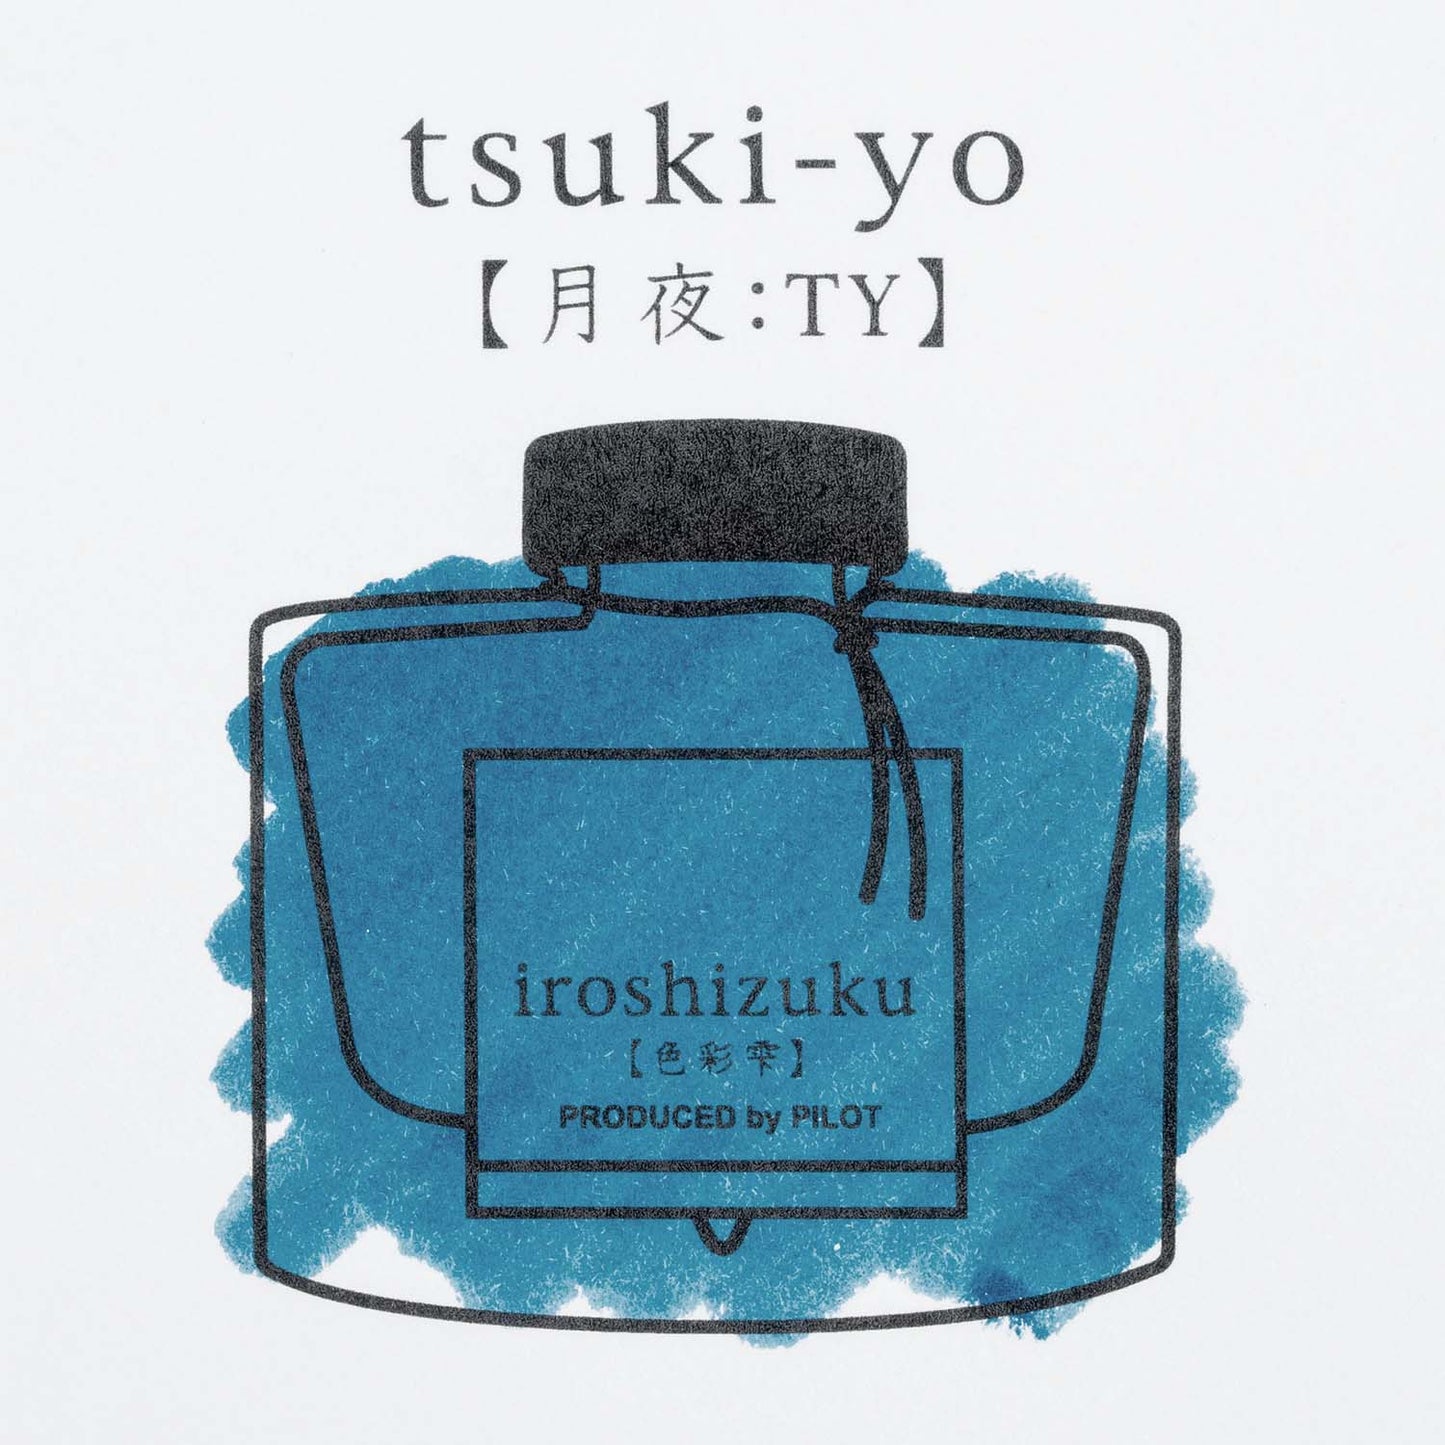 Pilot Iroshizuku tsuki-yo fountain pen ink sample